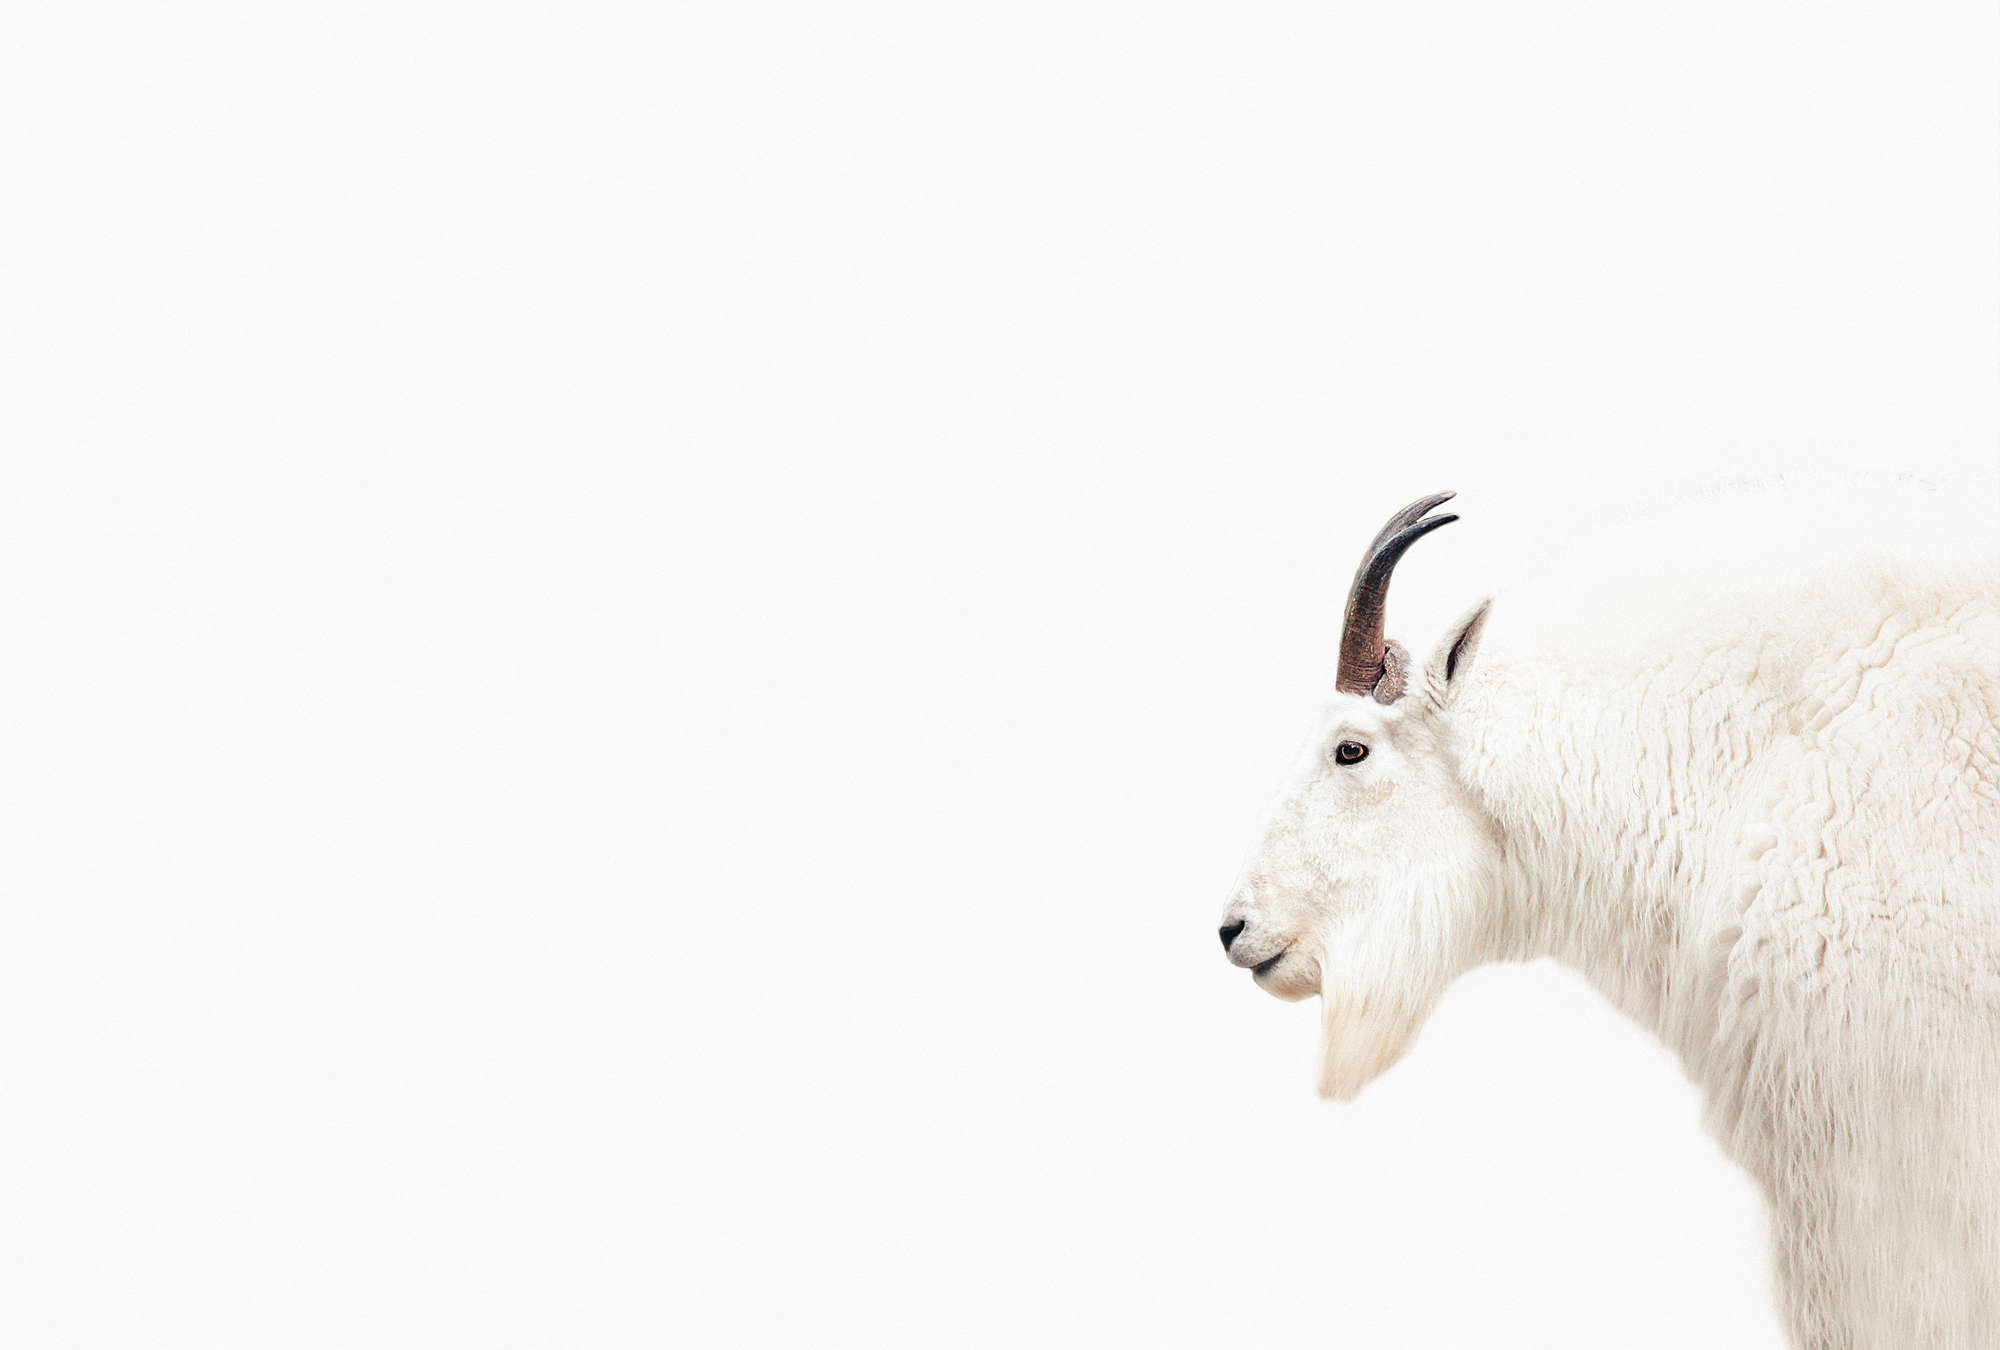             Wit fotobehang met geitenportret in XXL design
        